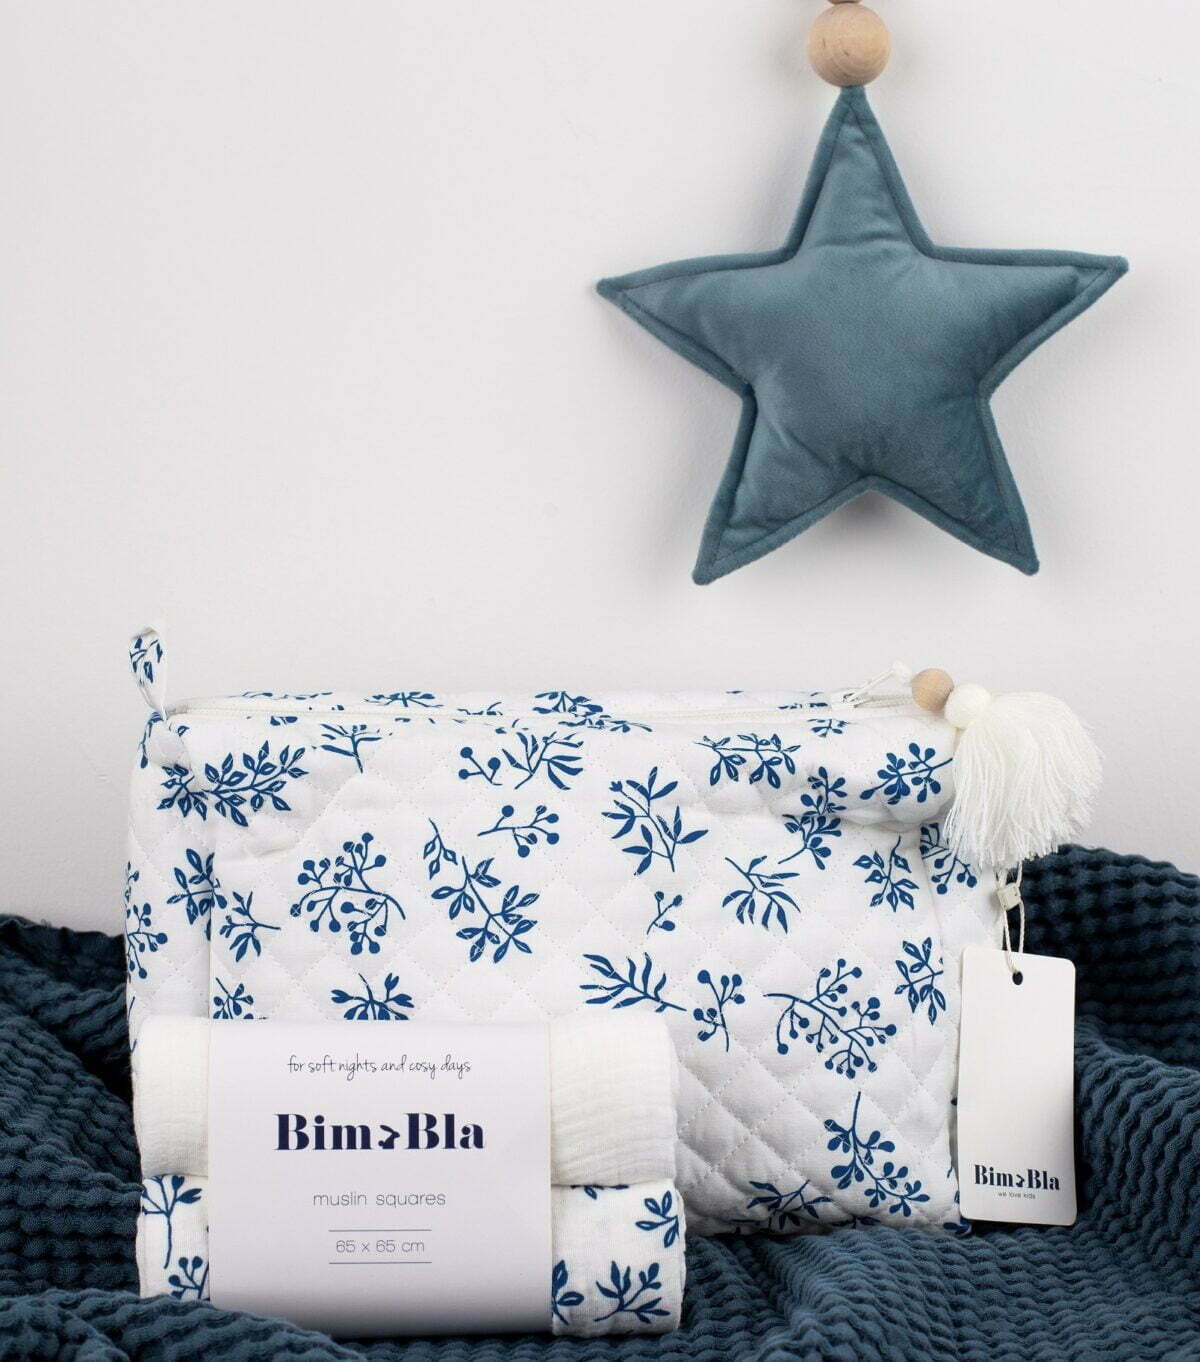 Baumwolle Kulturtasche mit blauen Blumen Motiv für Babies und Kinder mit zwei Musselin Mulltücher